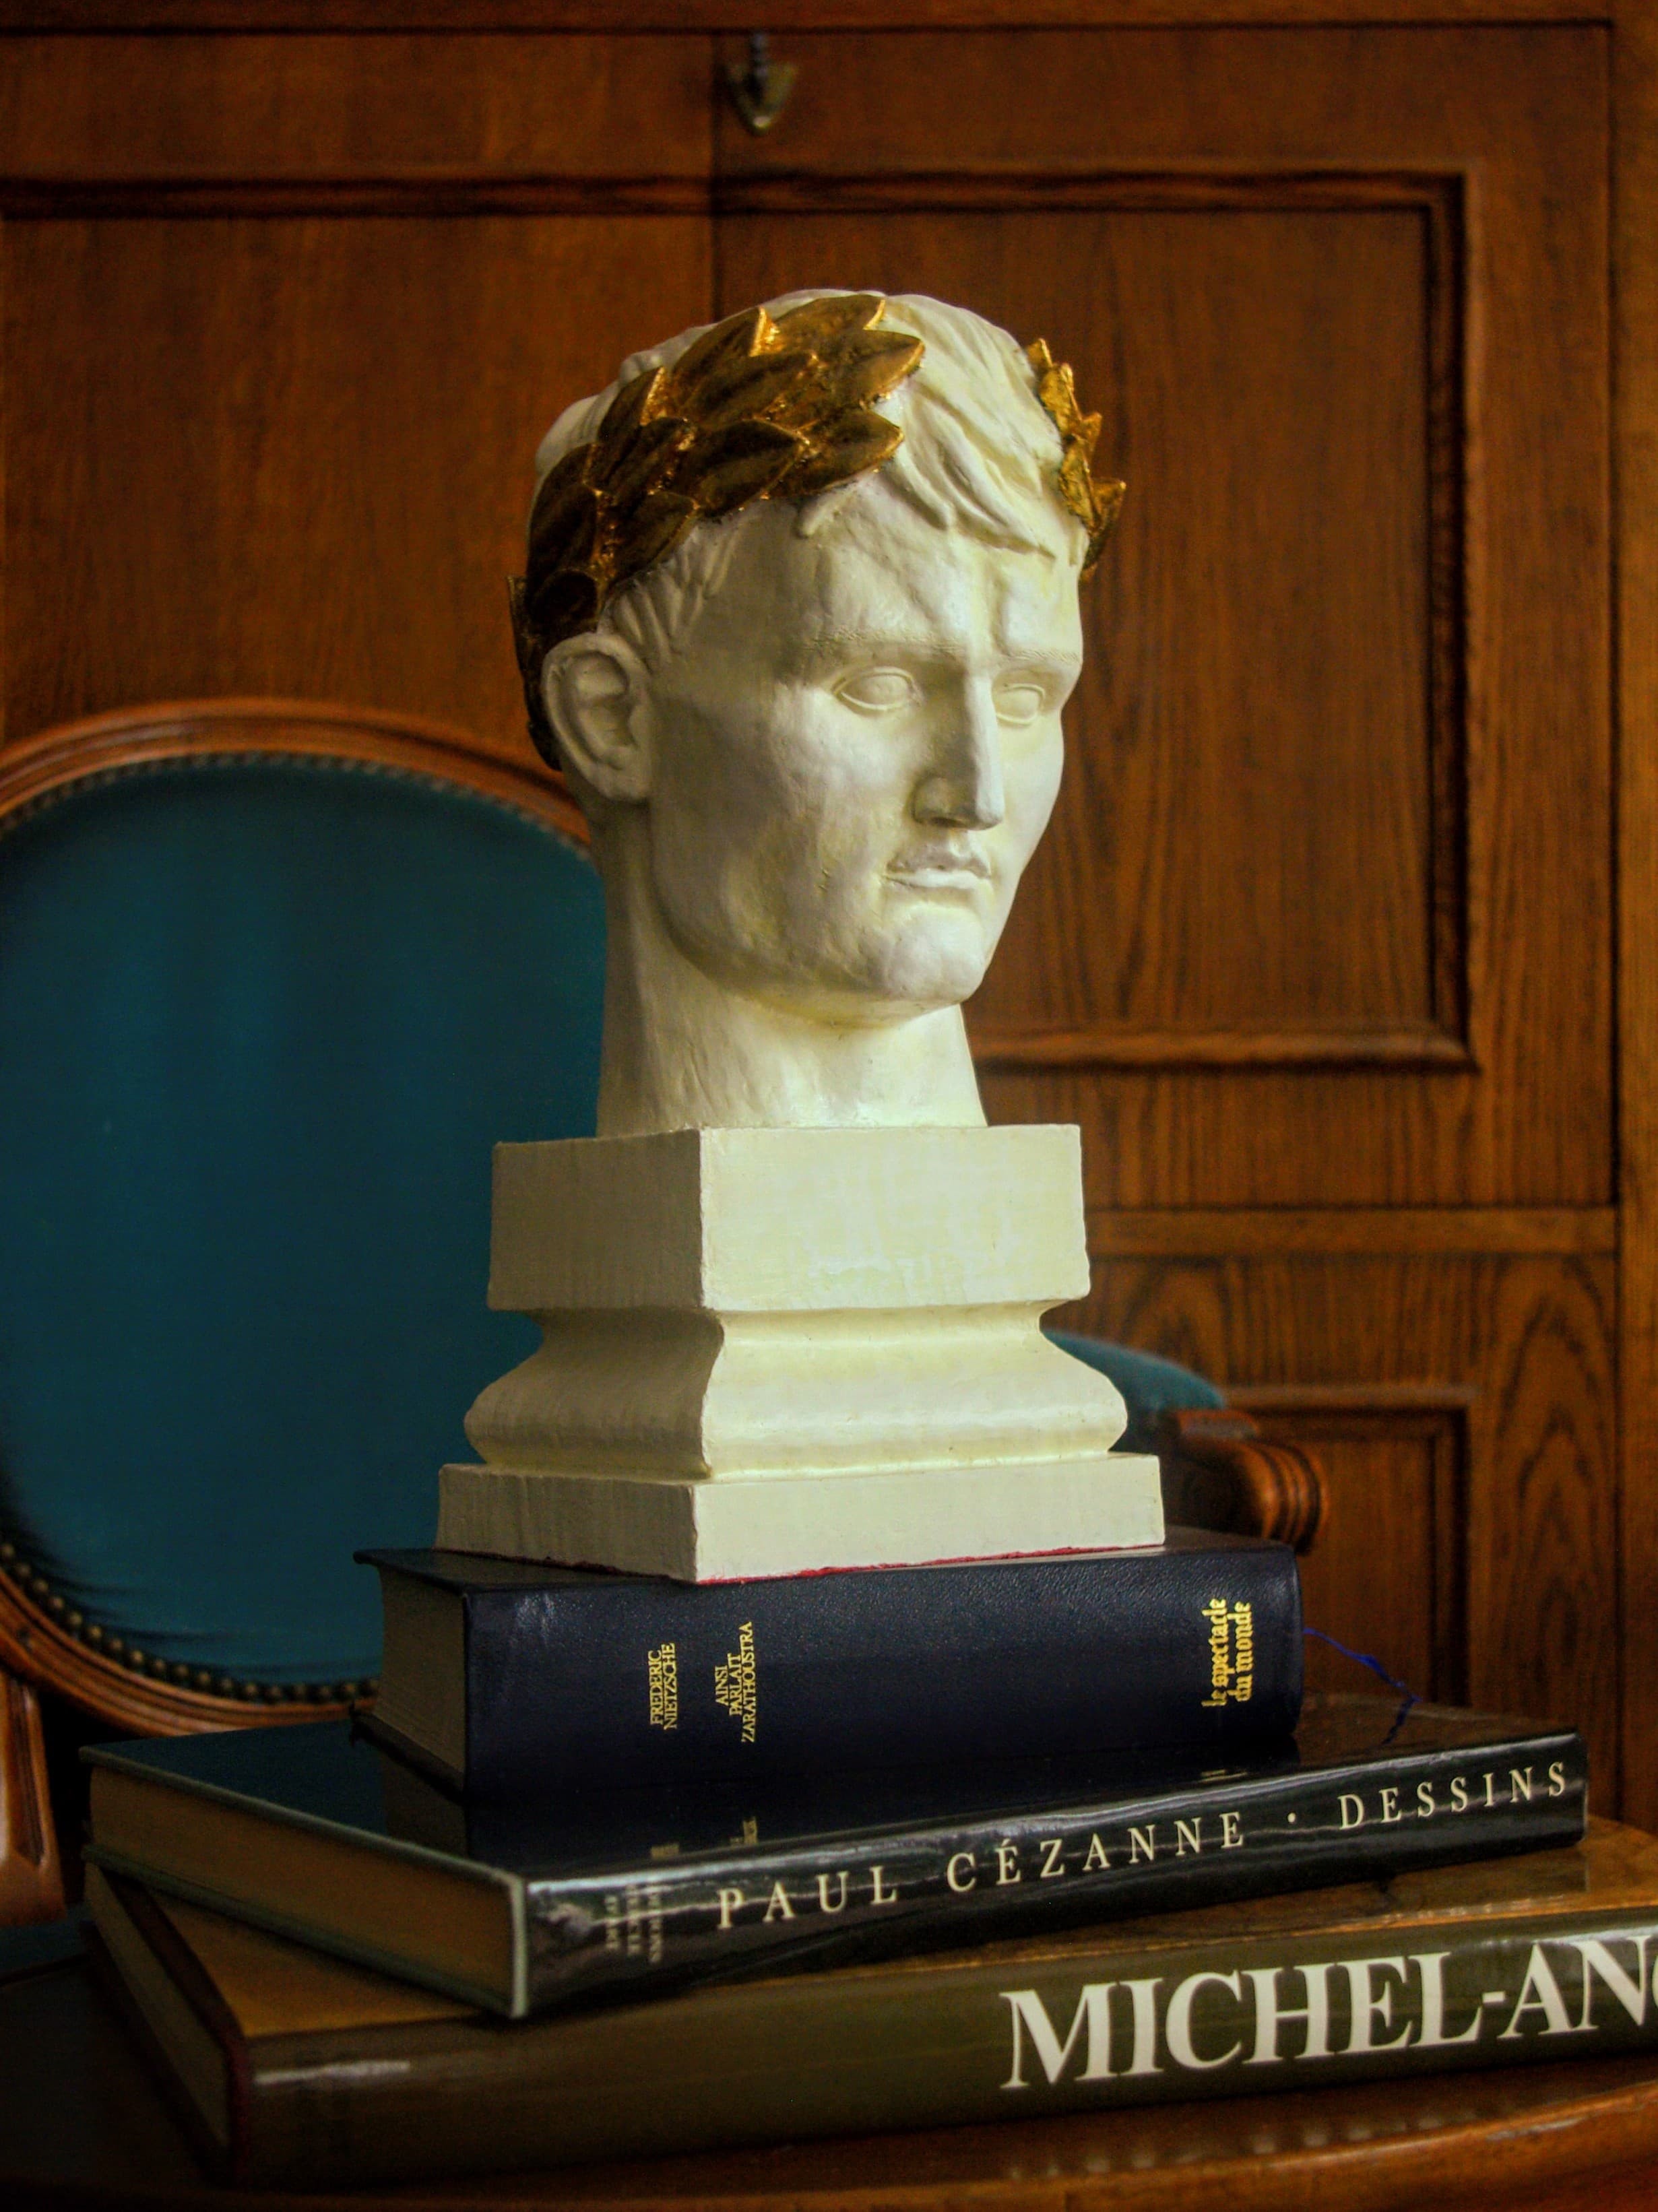 Buste de l 'Empereur Napoléon - Objets divers (10446037)